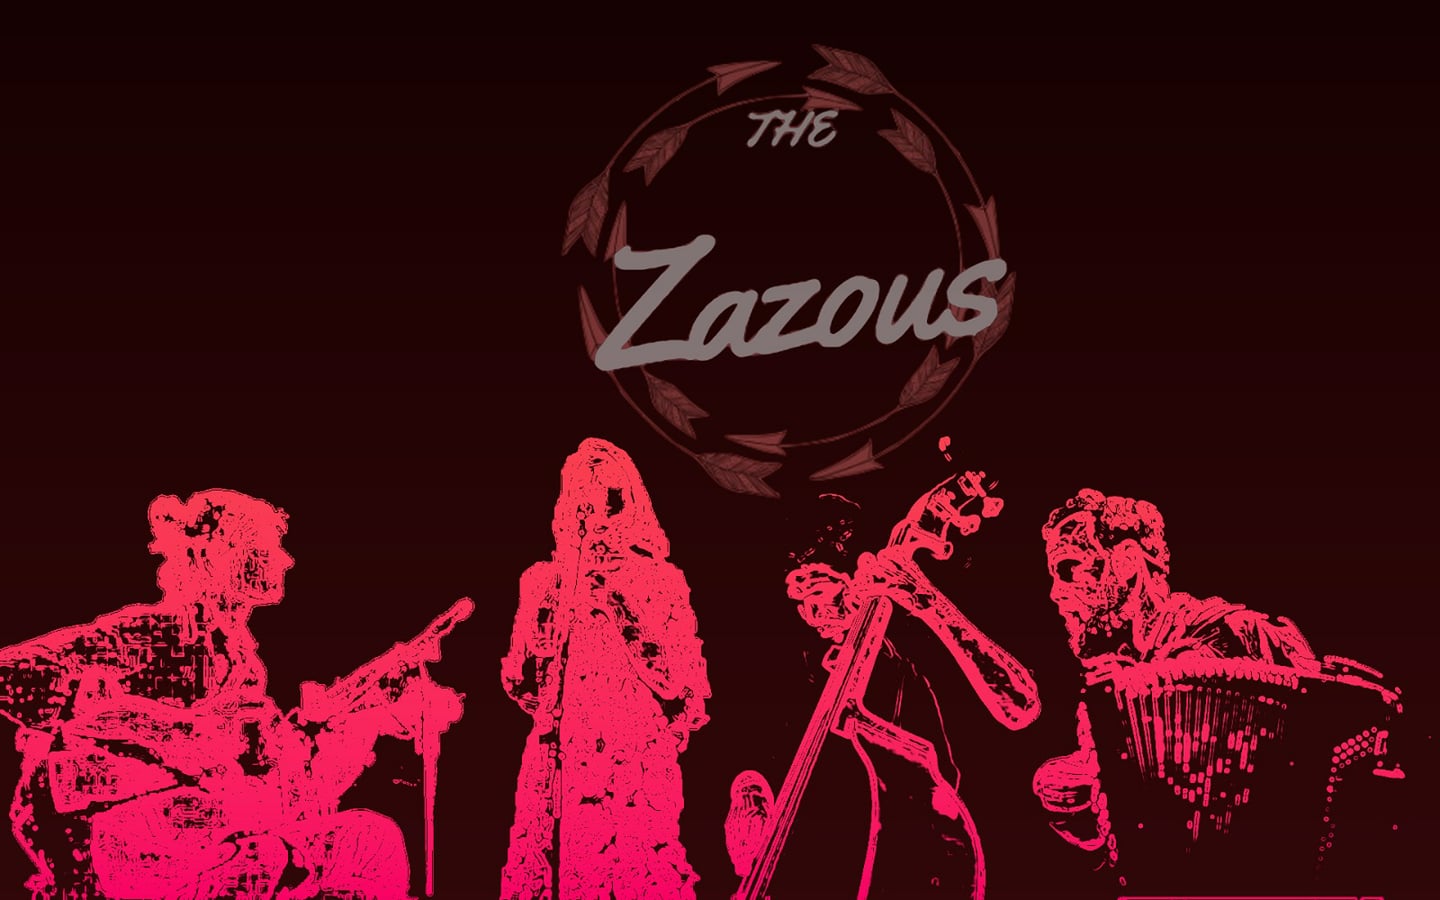 The Zazous